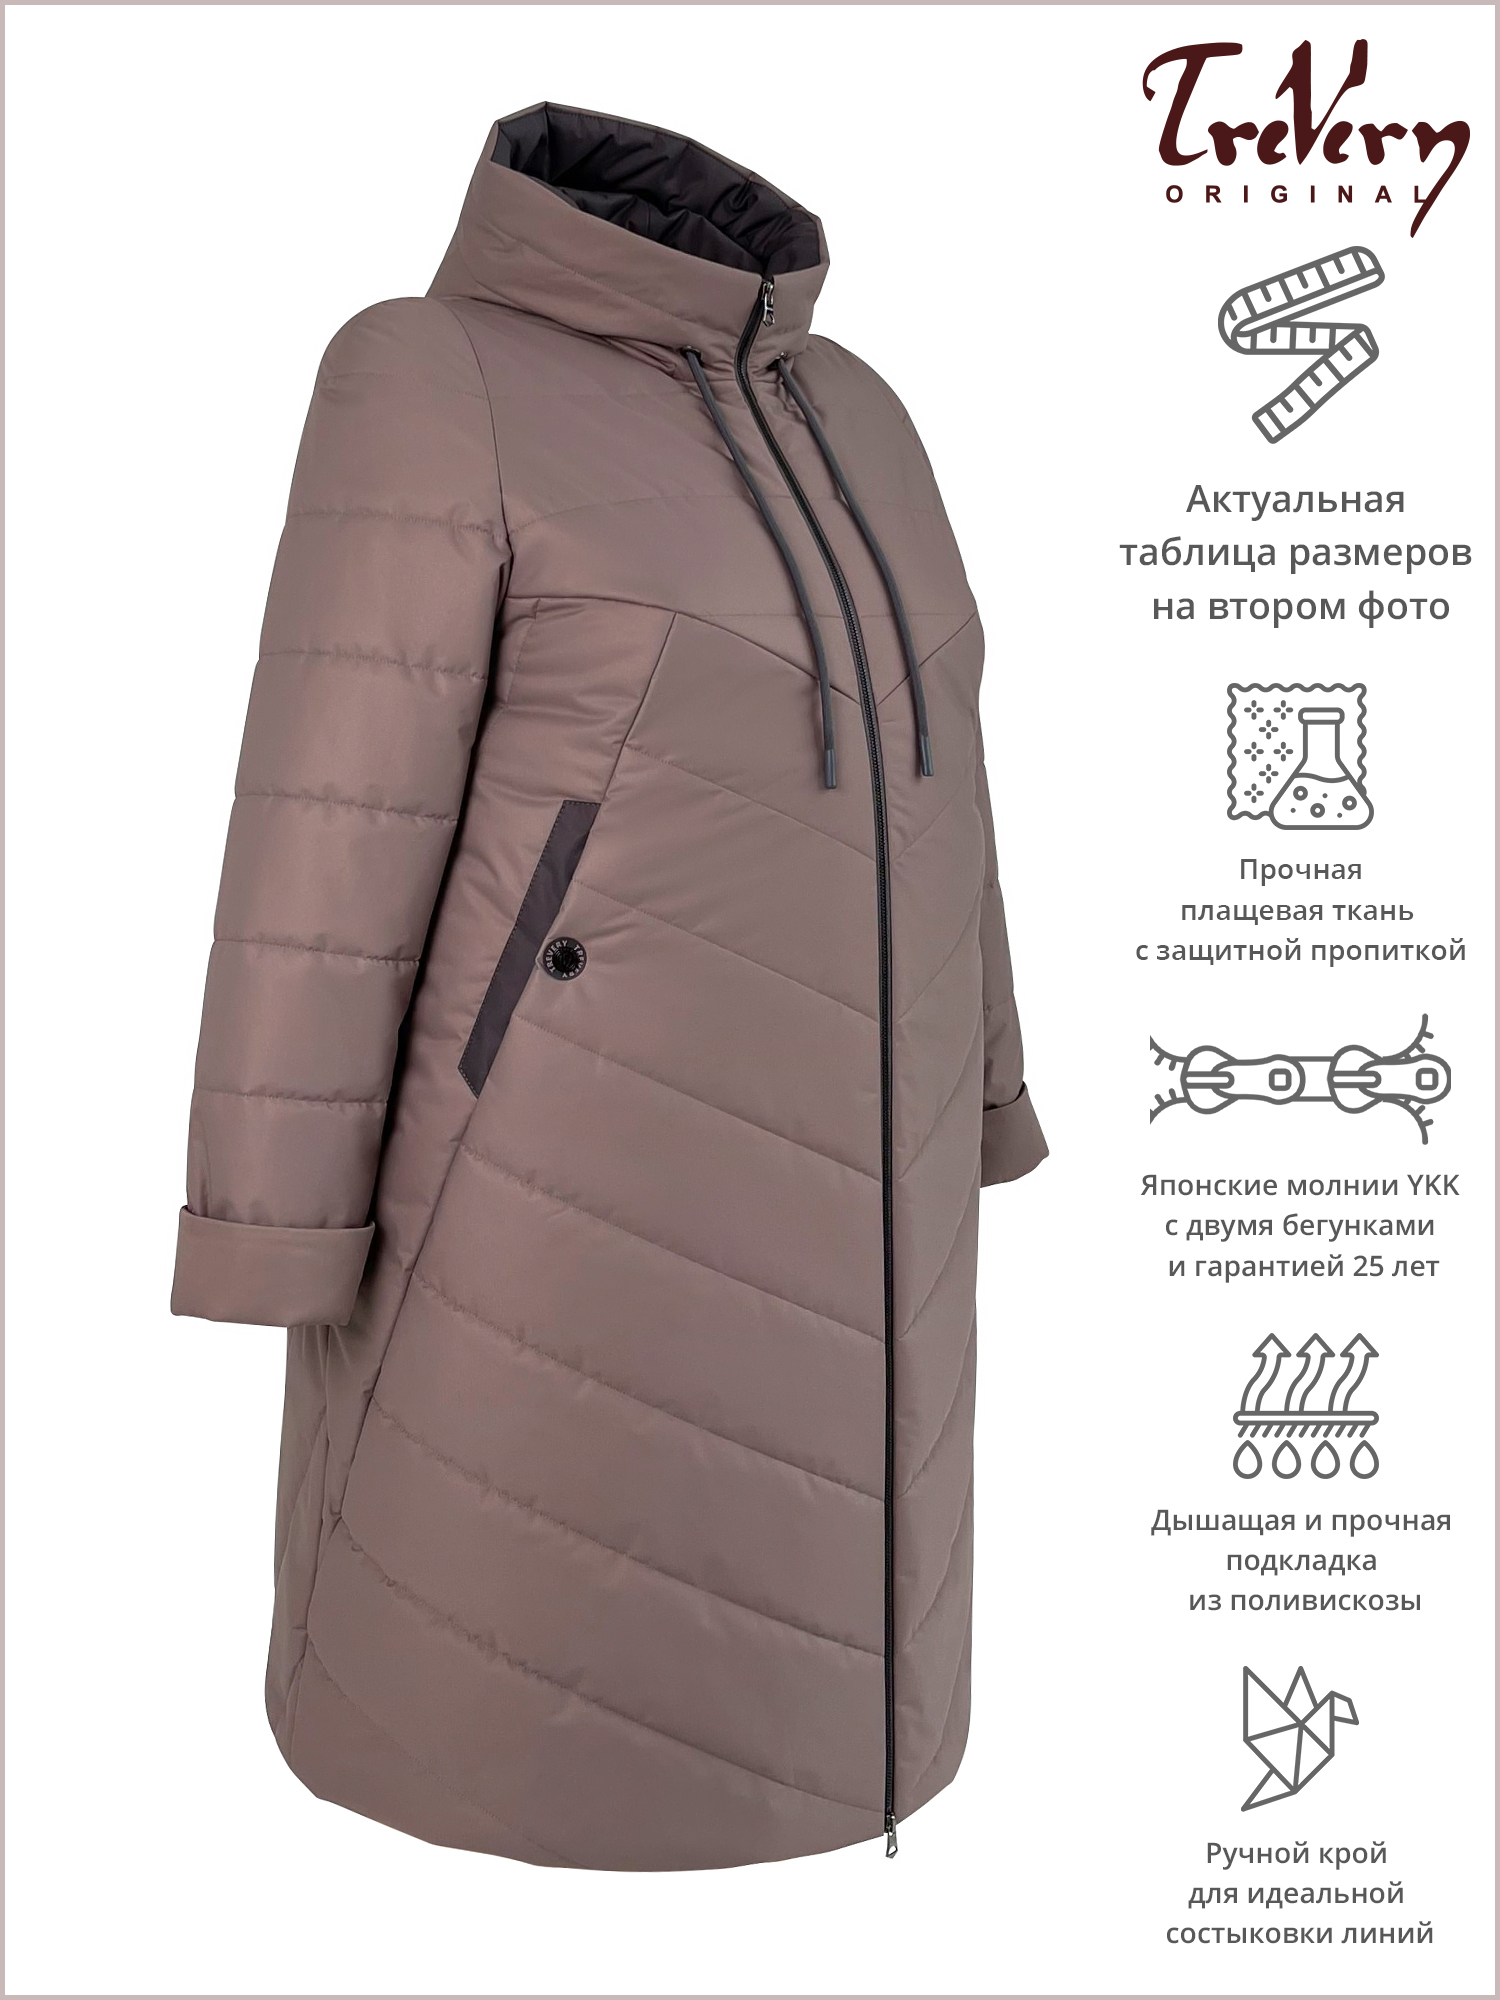 Пальто женское Trevery 922 коричневое 72 RU